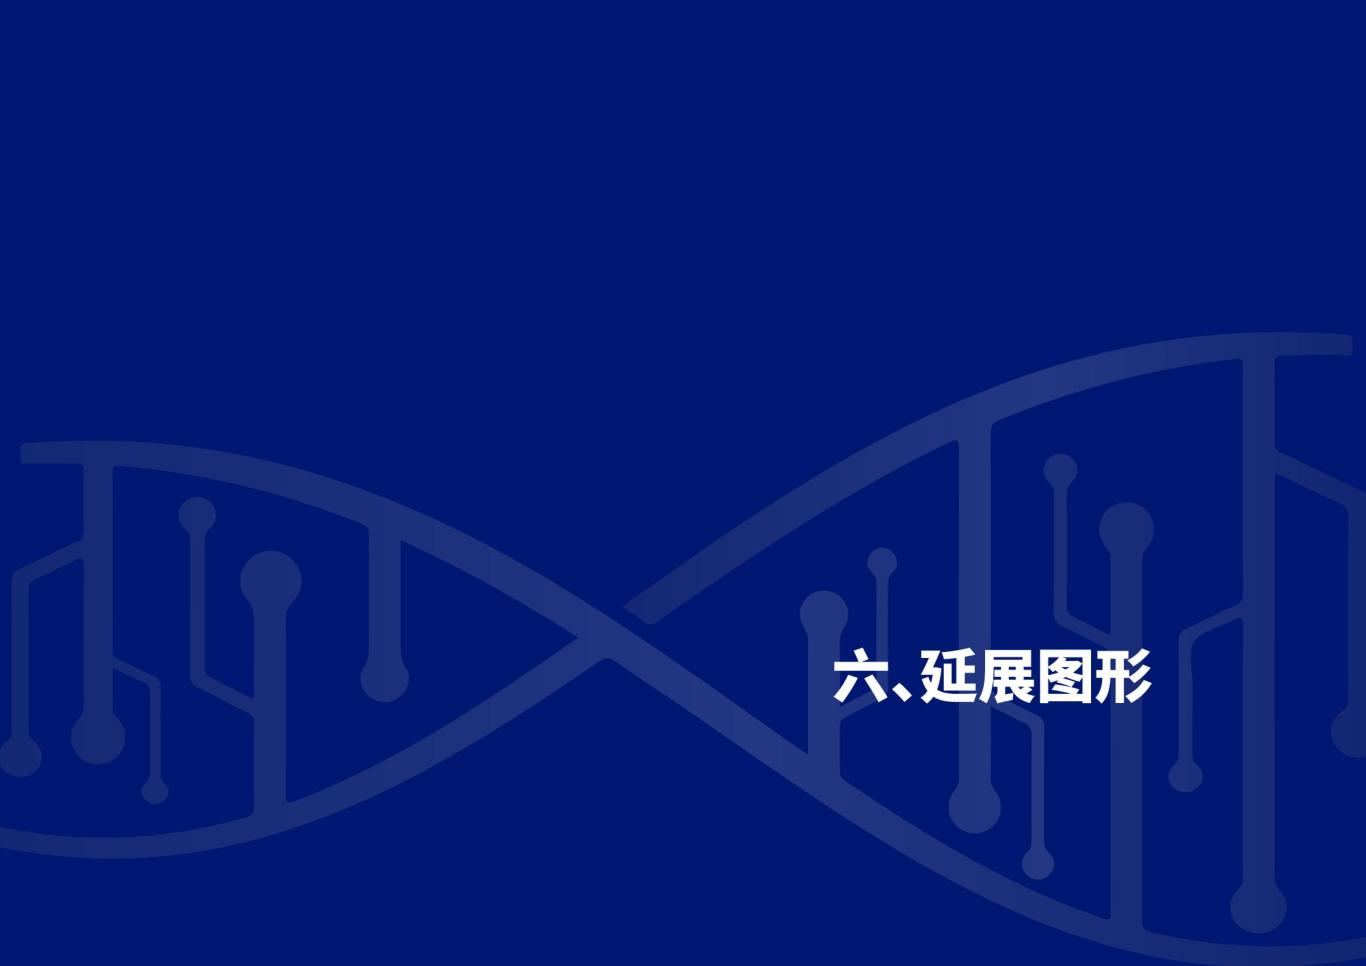 深圳合成生物学创新研究院品牌设计规范图22